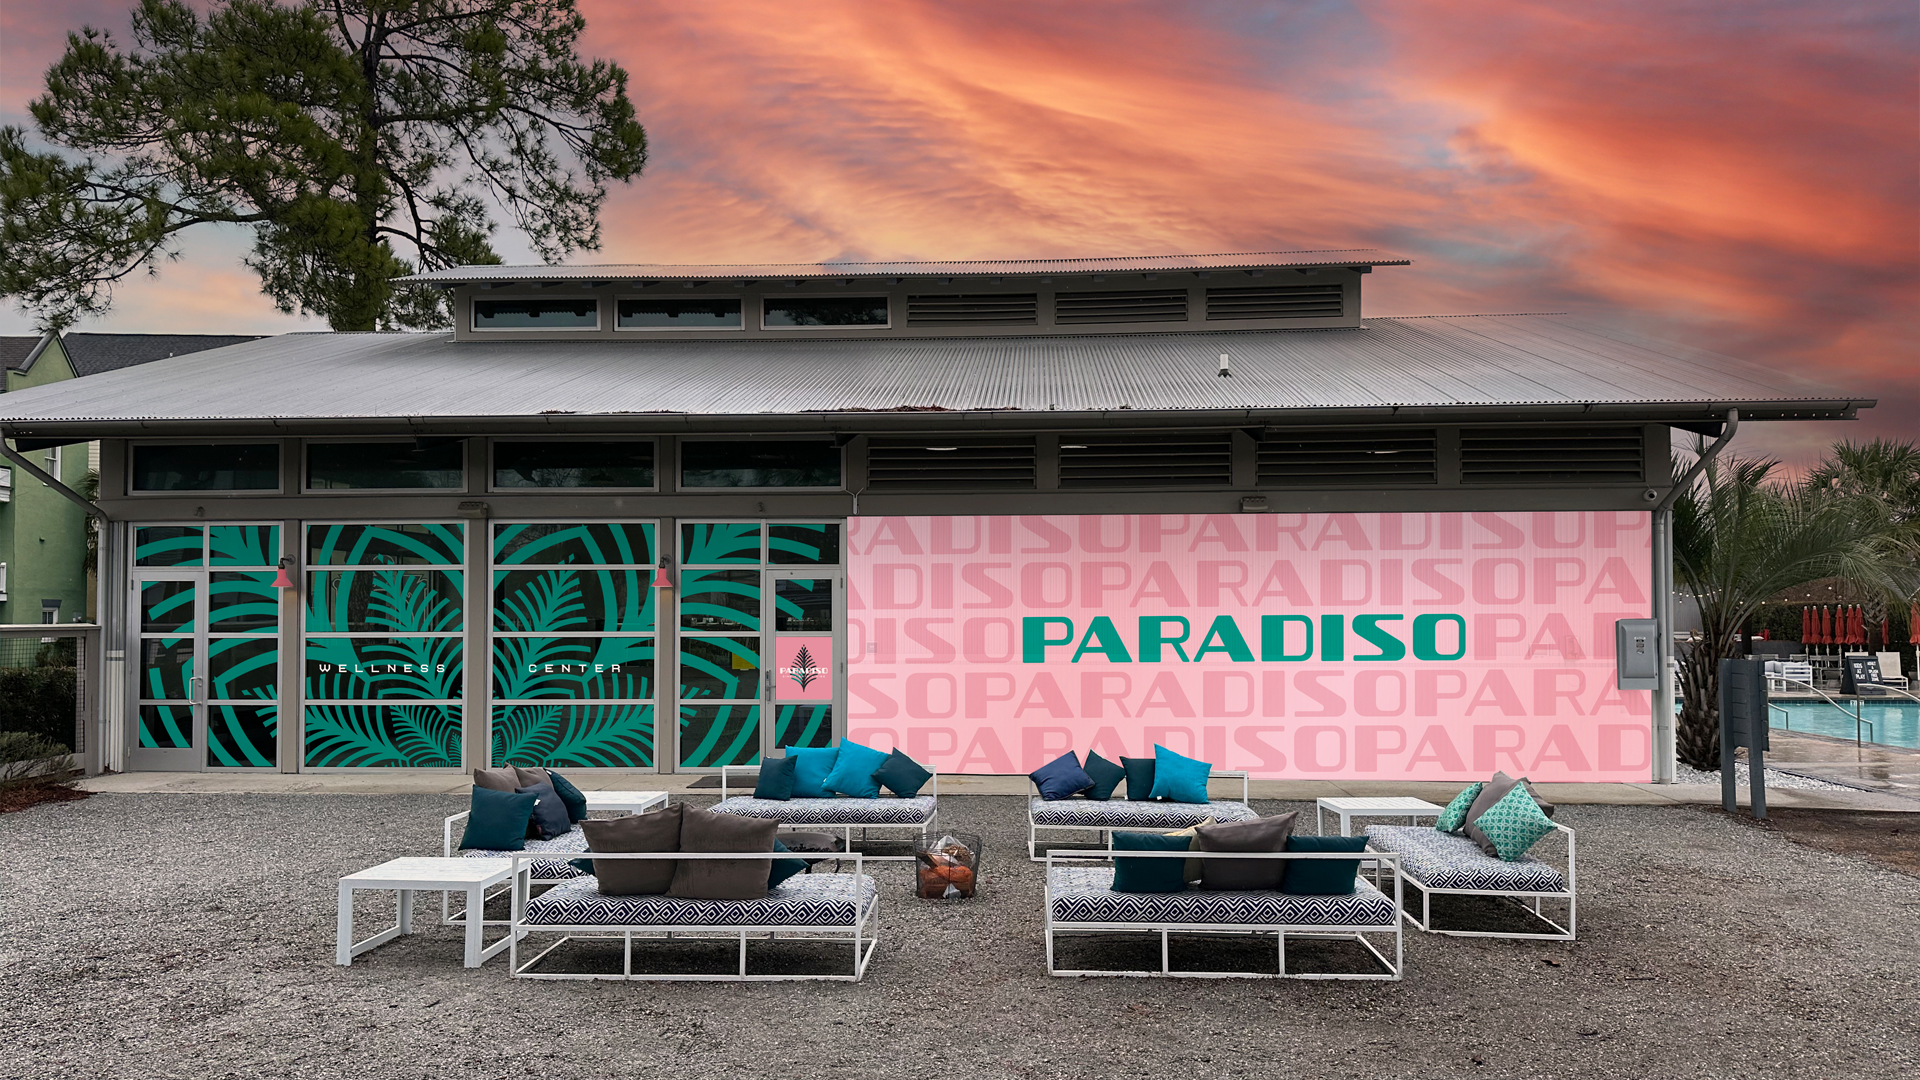 Paradiso Building Facade